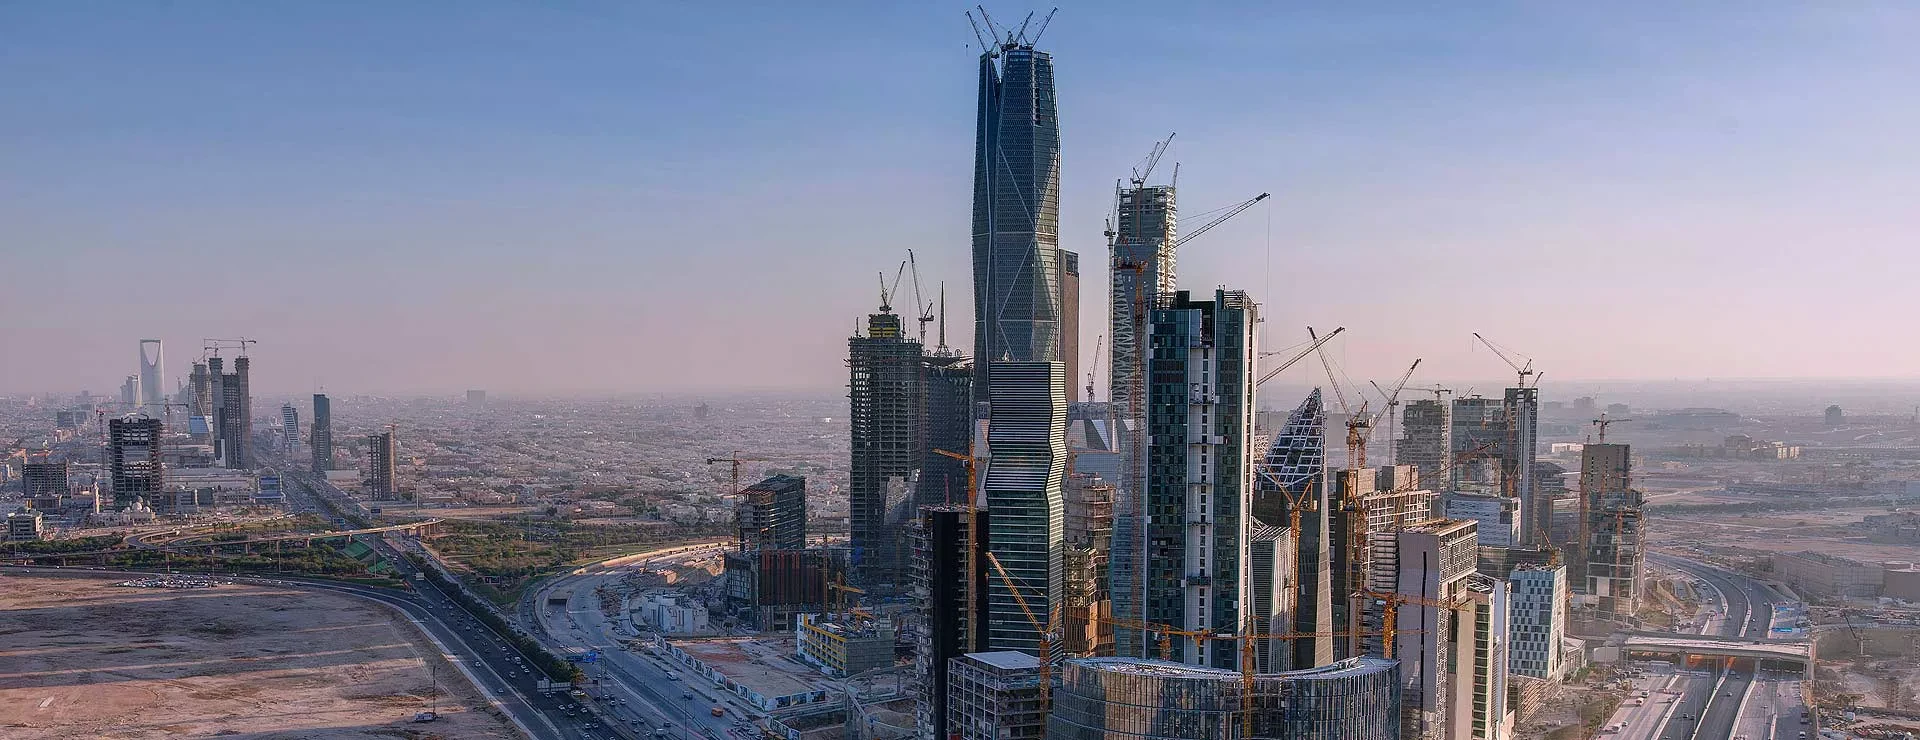 В Саудовской Аравии построят уникальный горизонтальный мегаполис